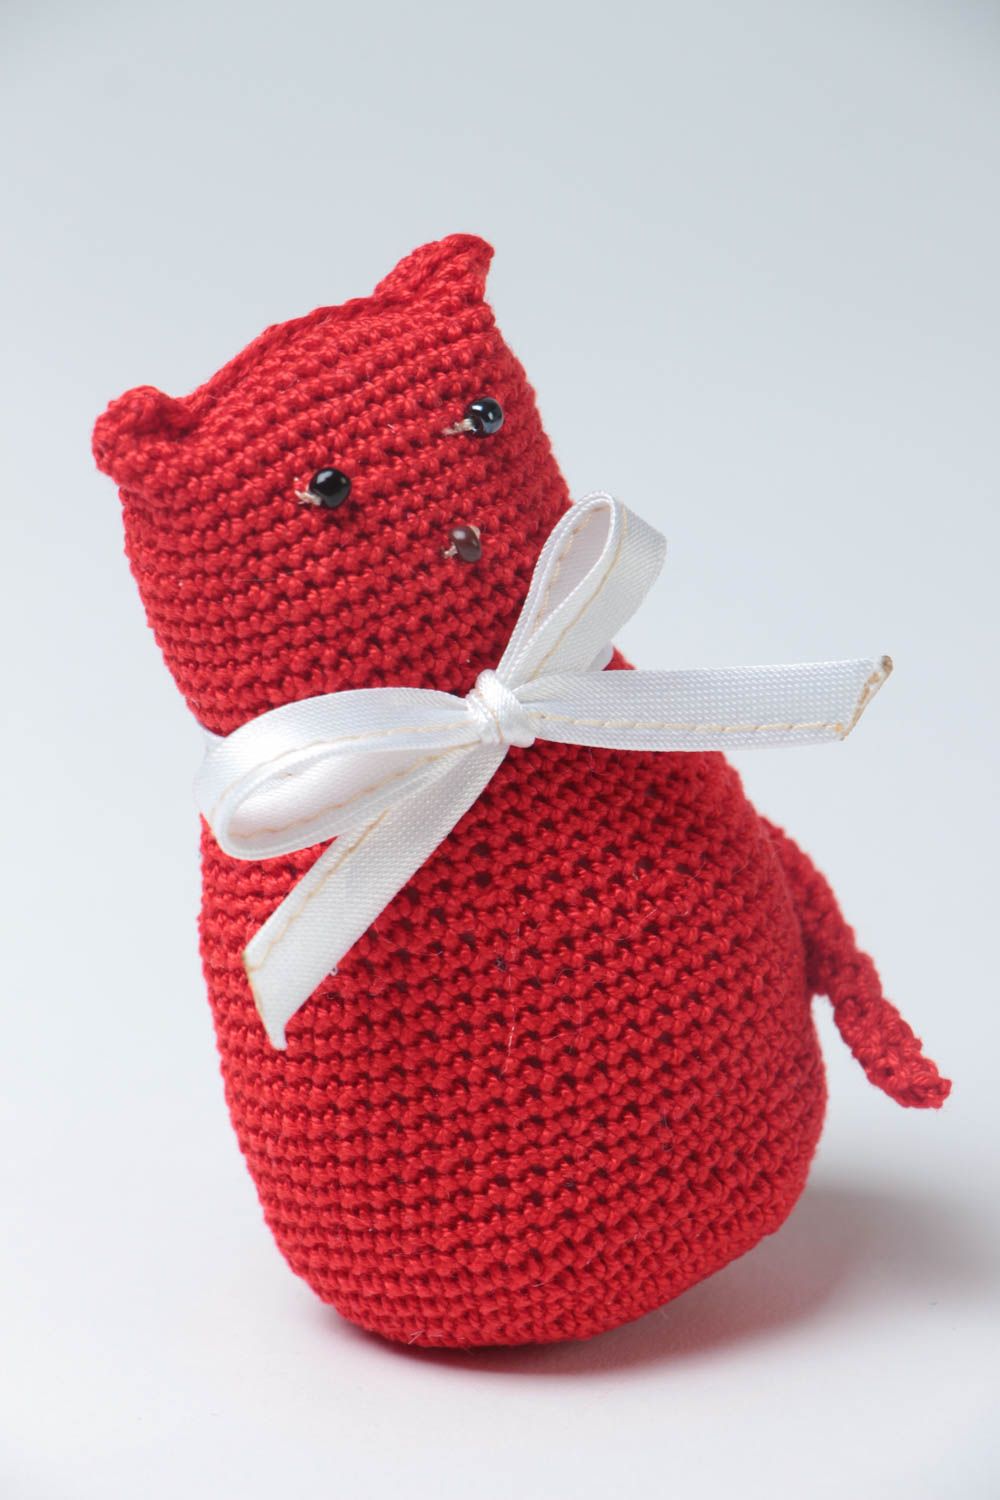 Peluche original hecho a mano juguete tejido al crochet regalo para niño foto 2